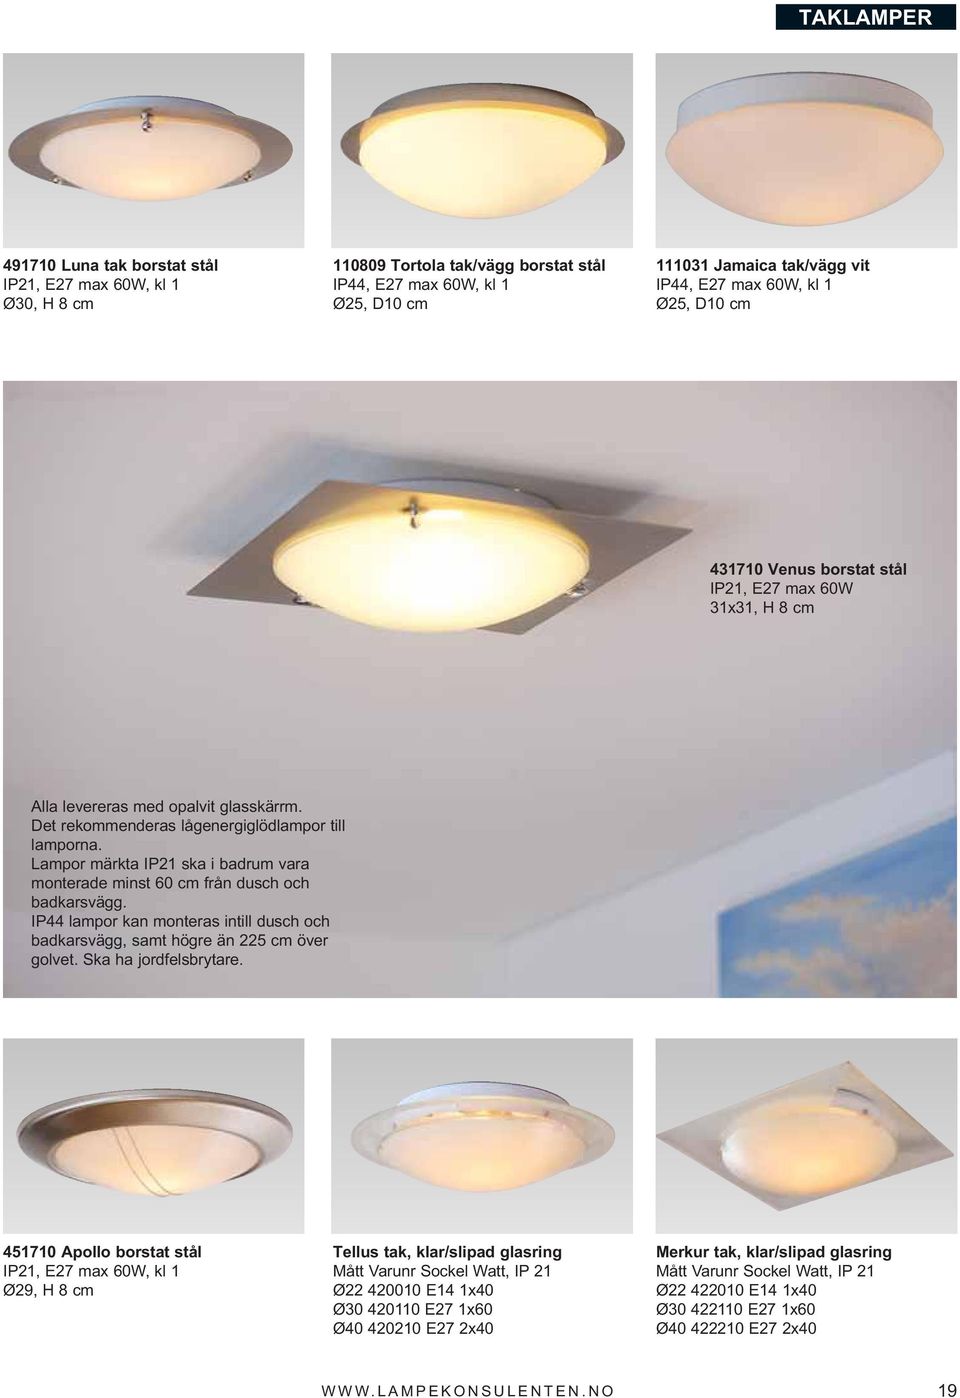 Lampor märkta IP21 ska i badrum vara monterade minst 60 cm från dusch och badkarsvägg. IP44 lampor kan monteras intill dusch och badkarsvägg, samt högre än 225 cm över golvet. Ska ha jordfelsbrytare.